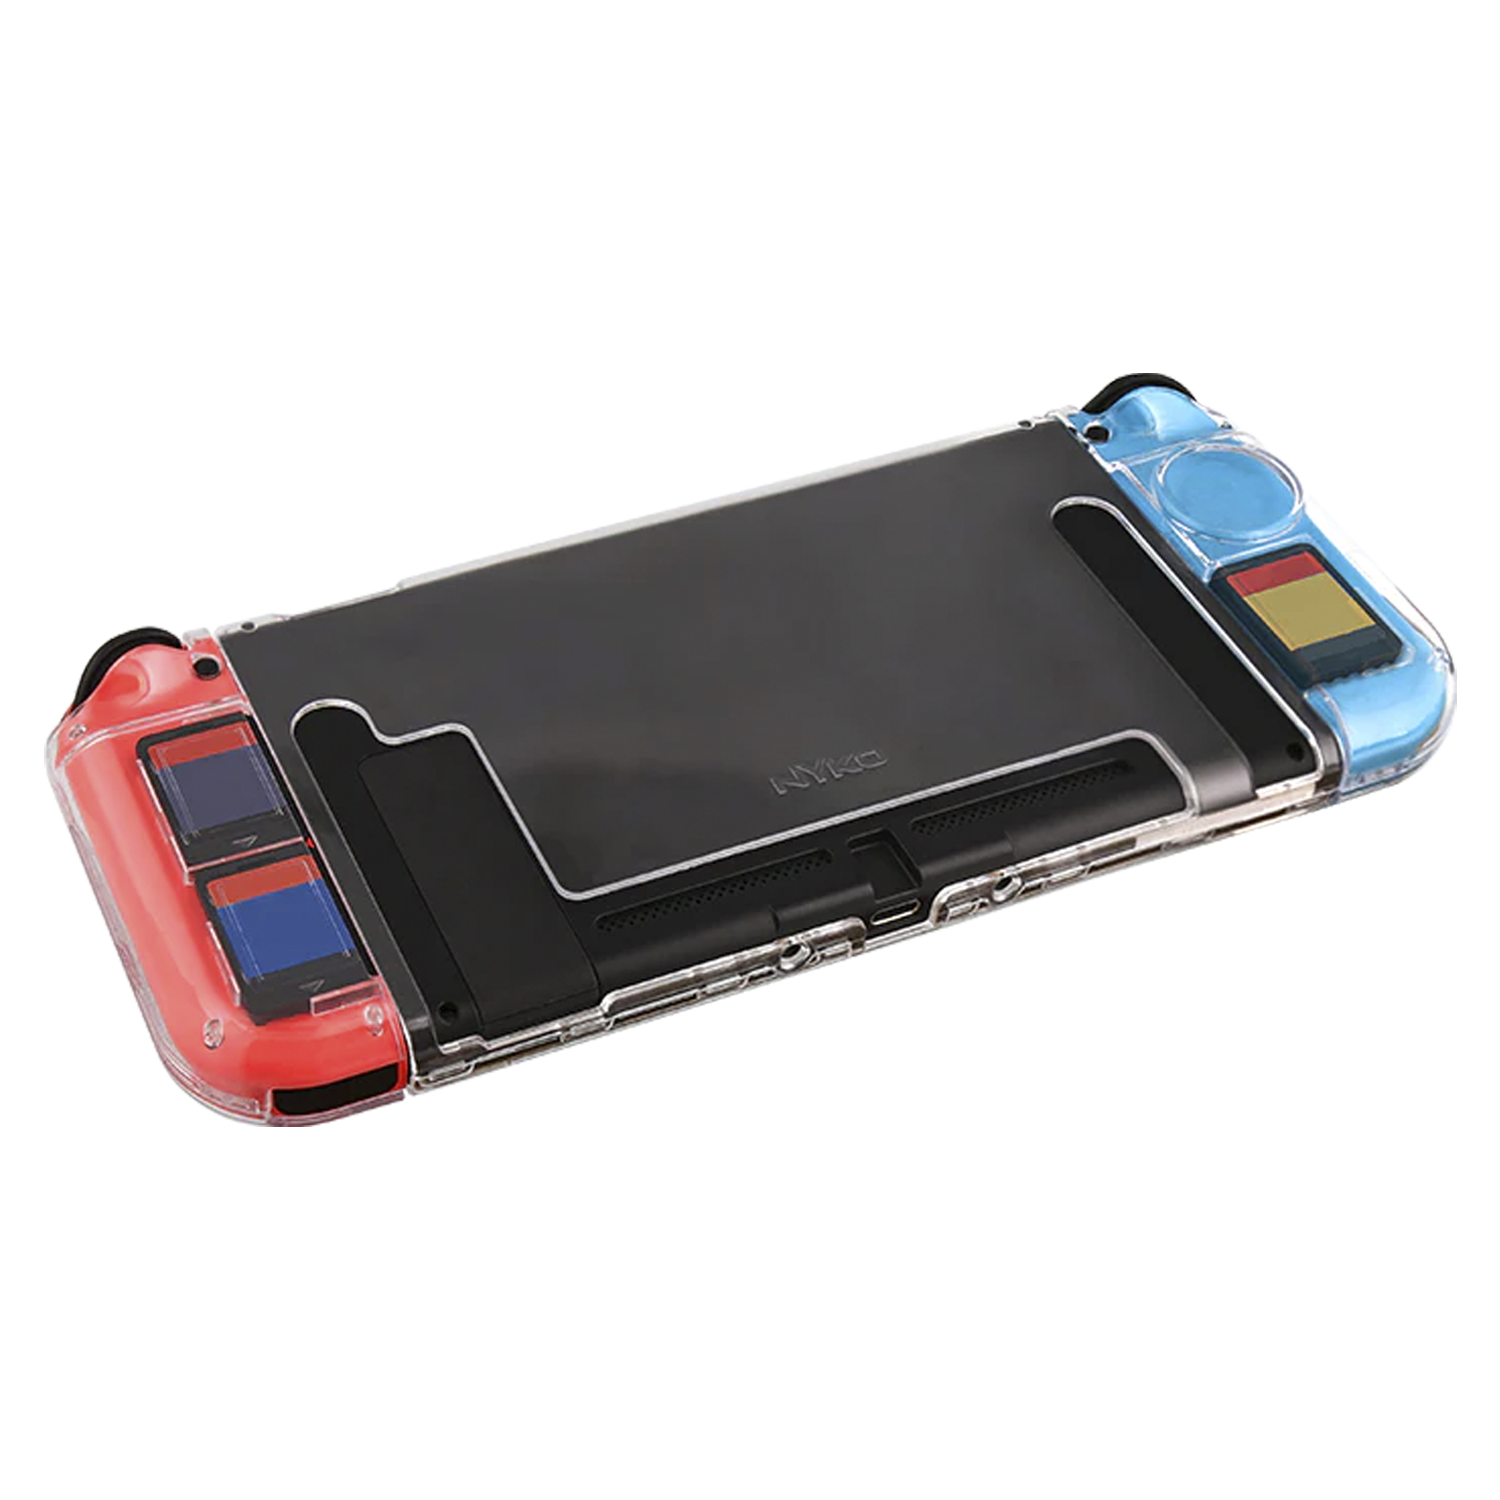 Case Protetor Nyko Dpad para Nintendo Switch (87276)
